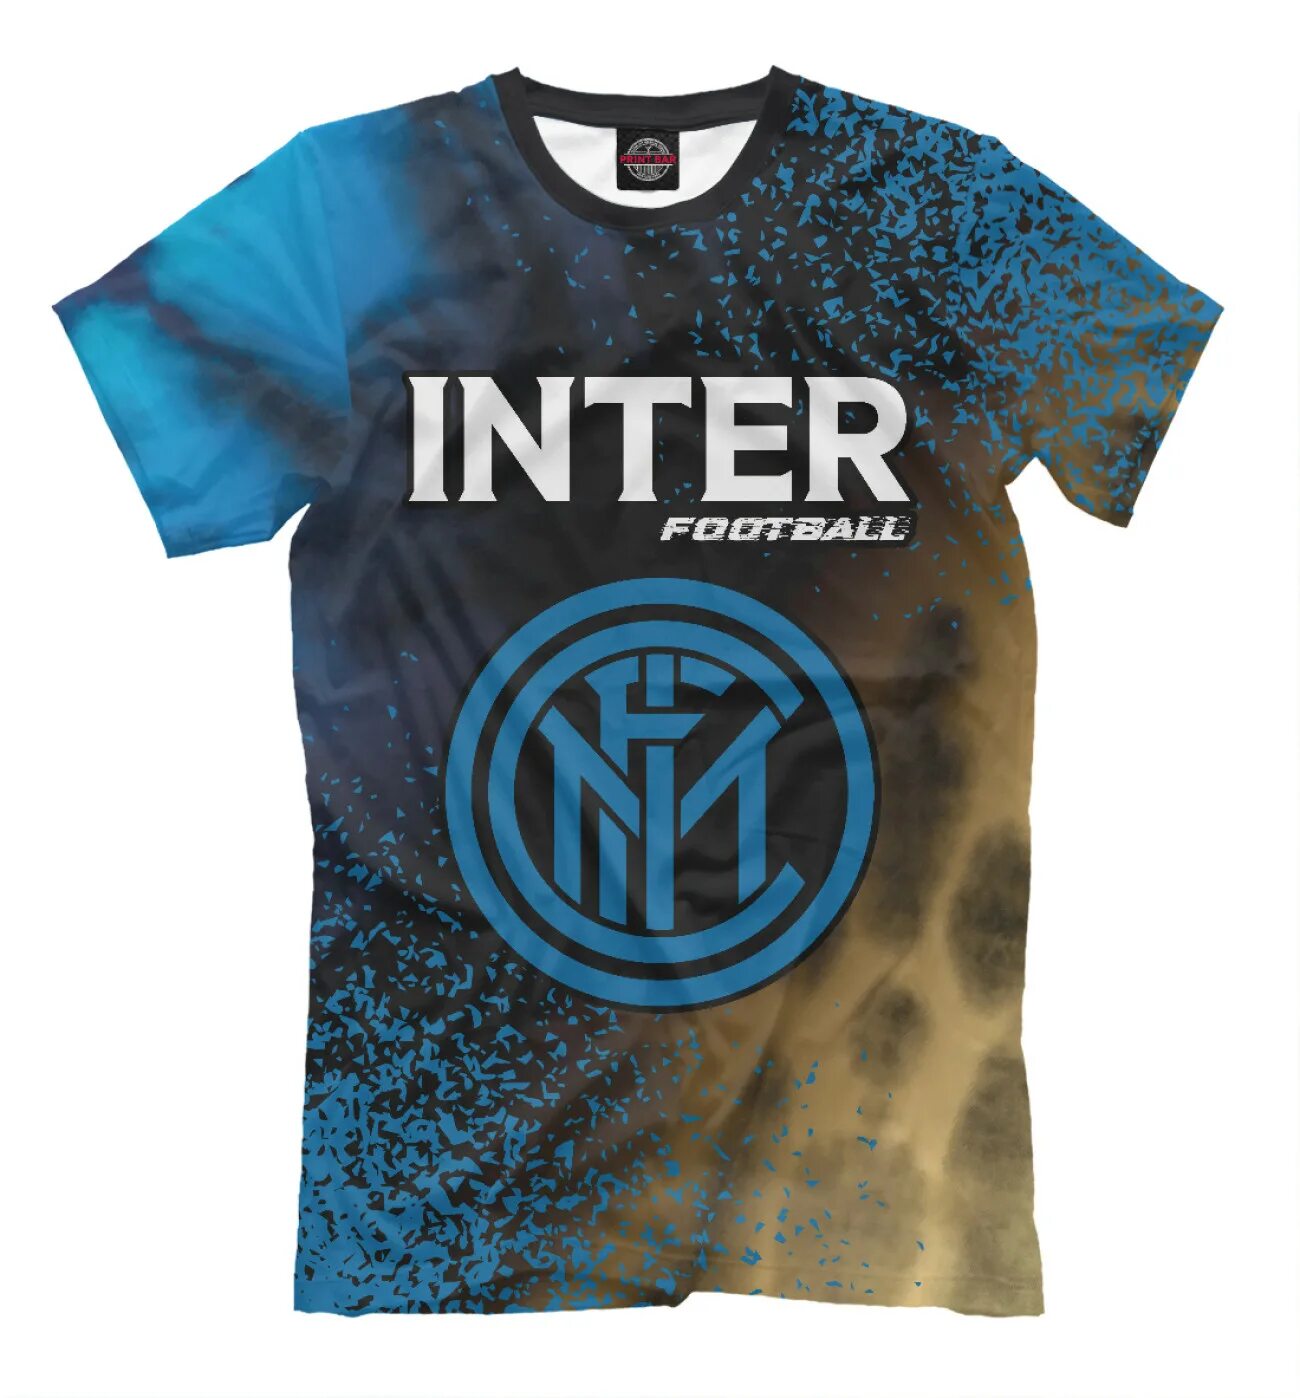 Купить футболку inter. Футболка Интер. Купить футболку ,Интер Италия,ретро,. Купить футболку ,Интер Италия,ретро,96.